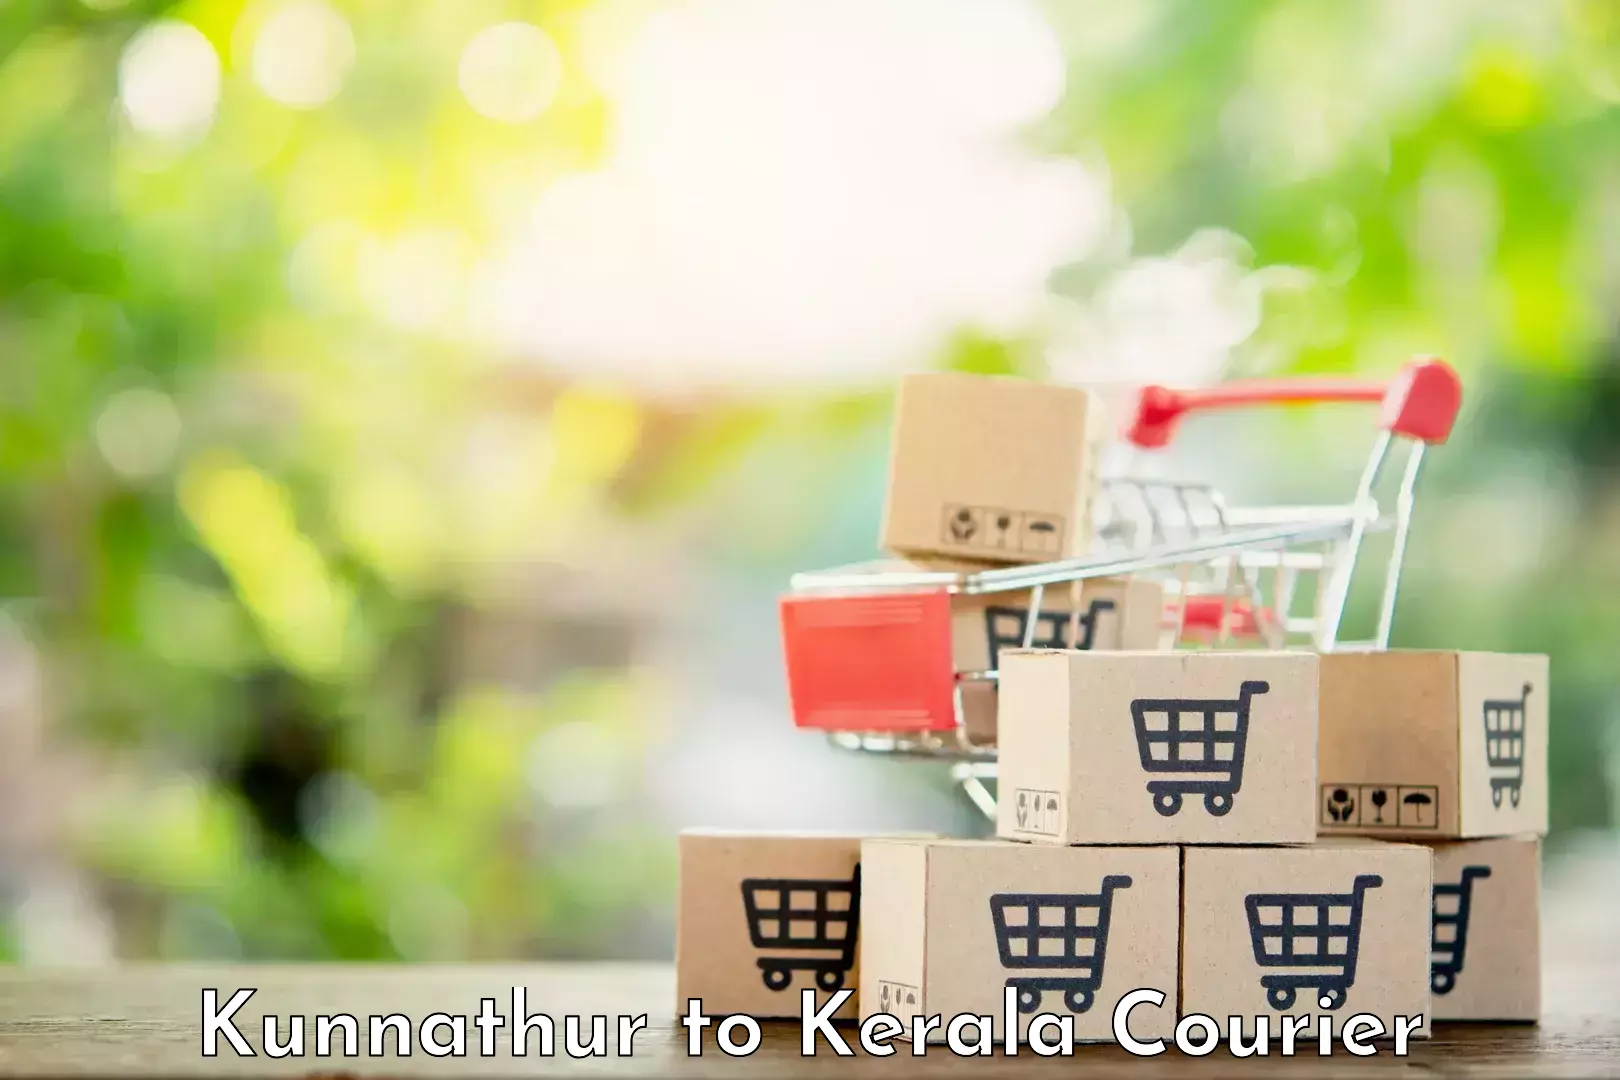 Efficient cargo handling Kunnathur to Cochin Port Kochi